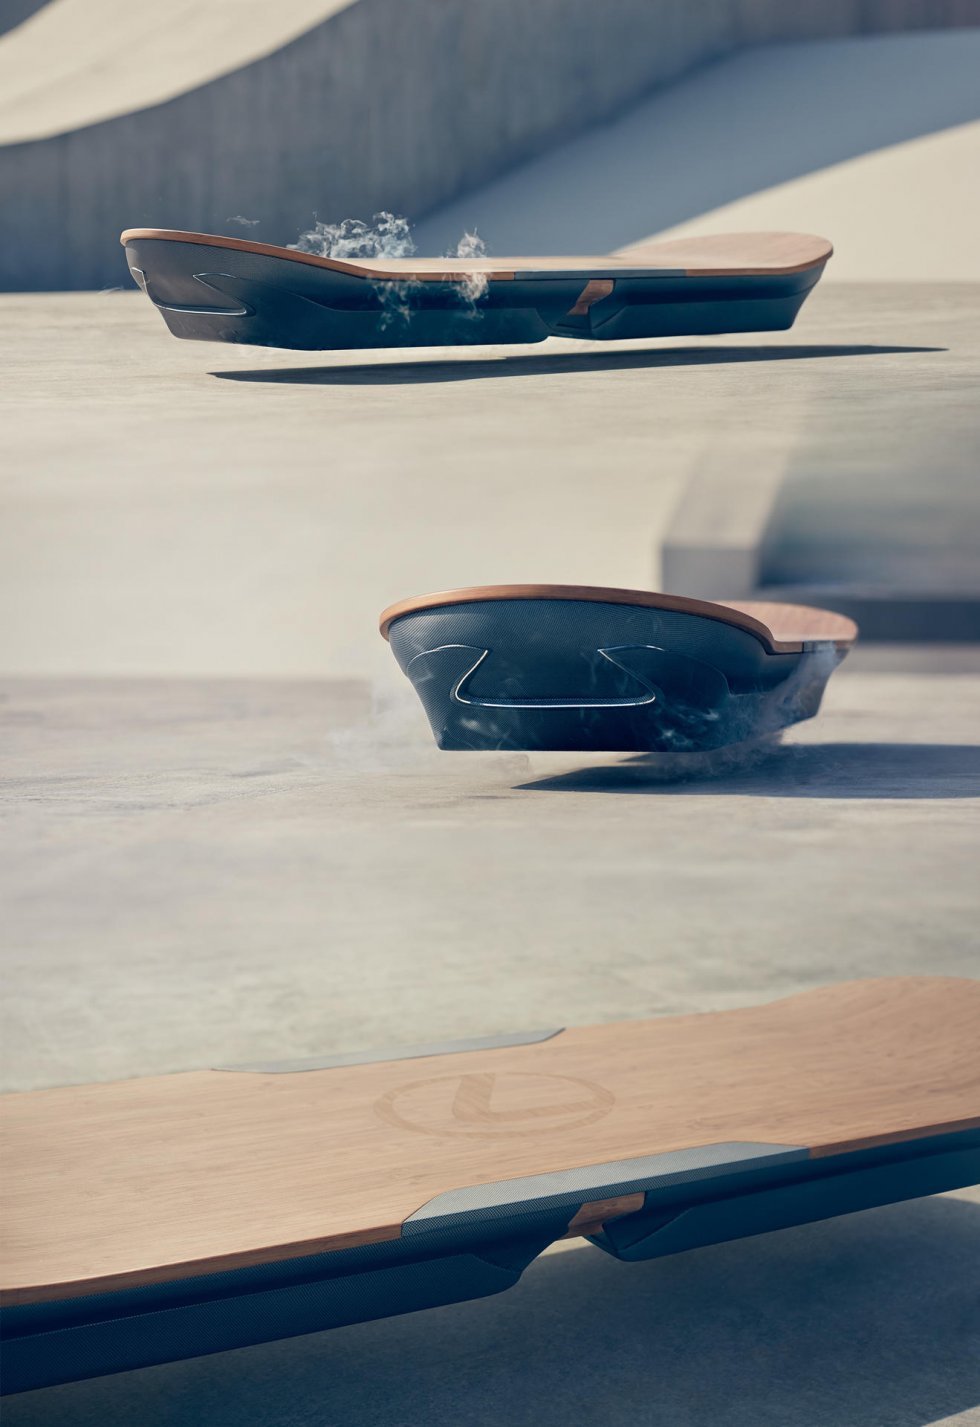 Lexus teaser hoverboard ala Tilbage til Fremtiden